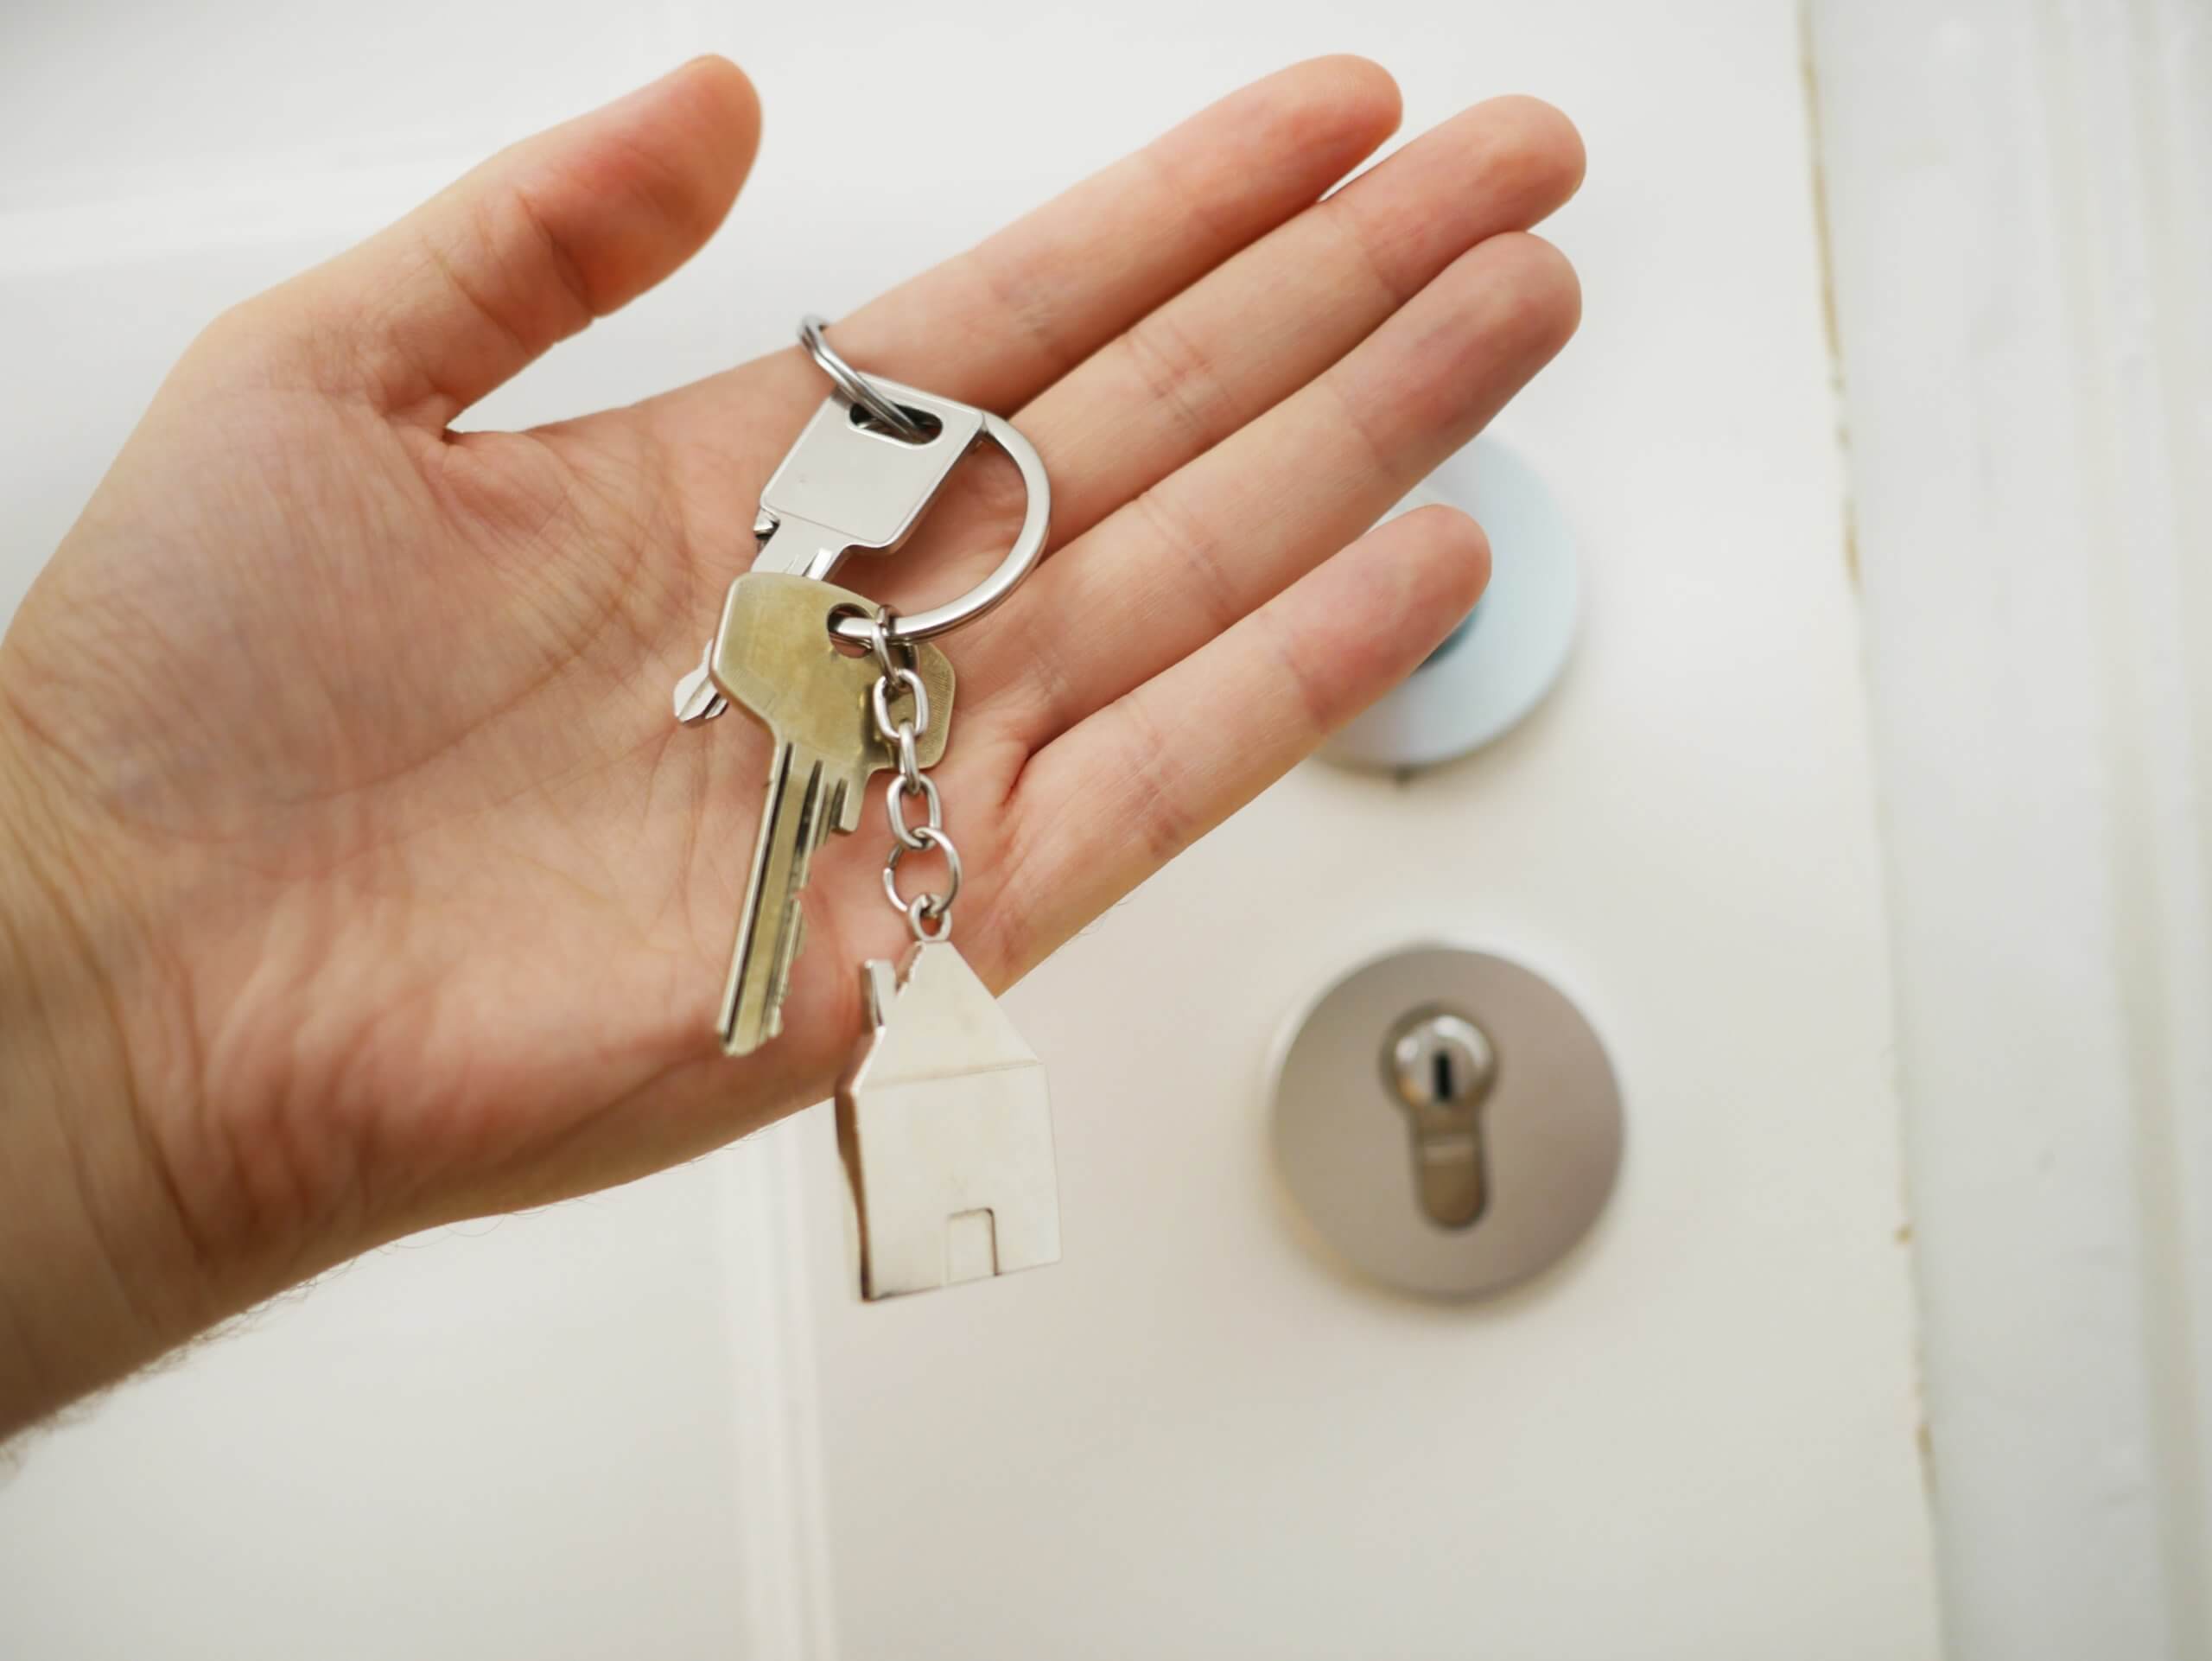 Four tips for landlords in Minnesota